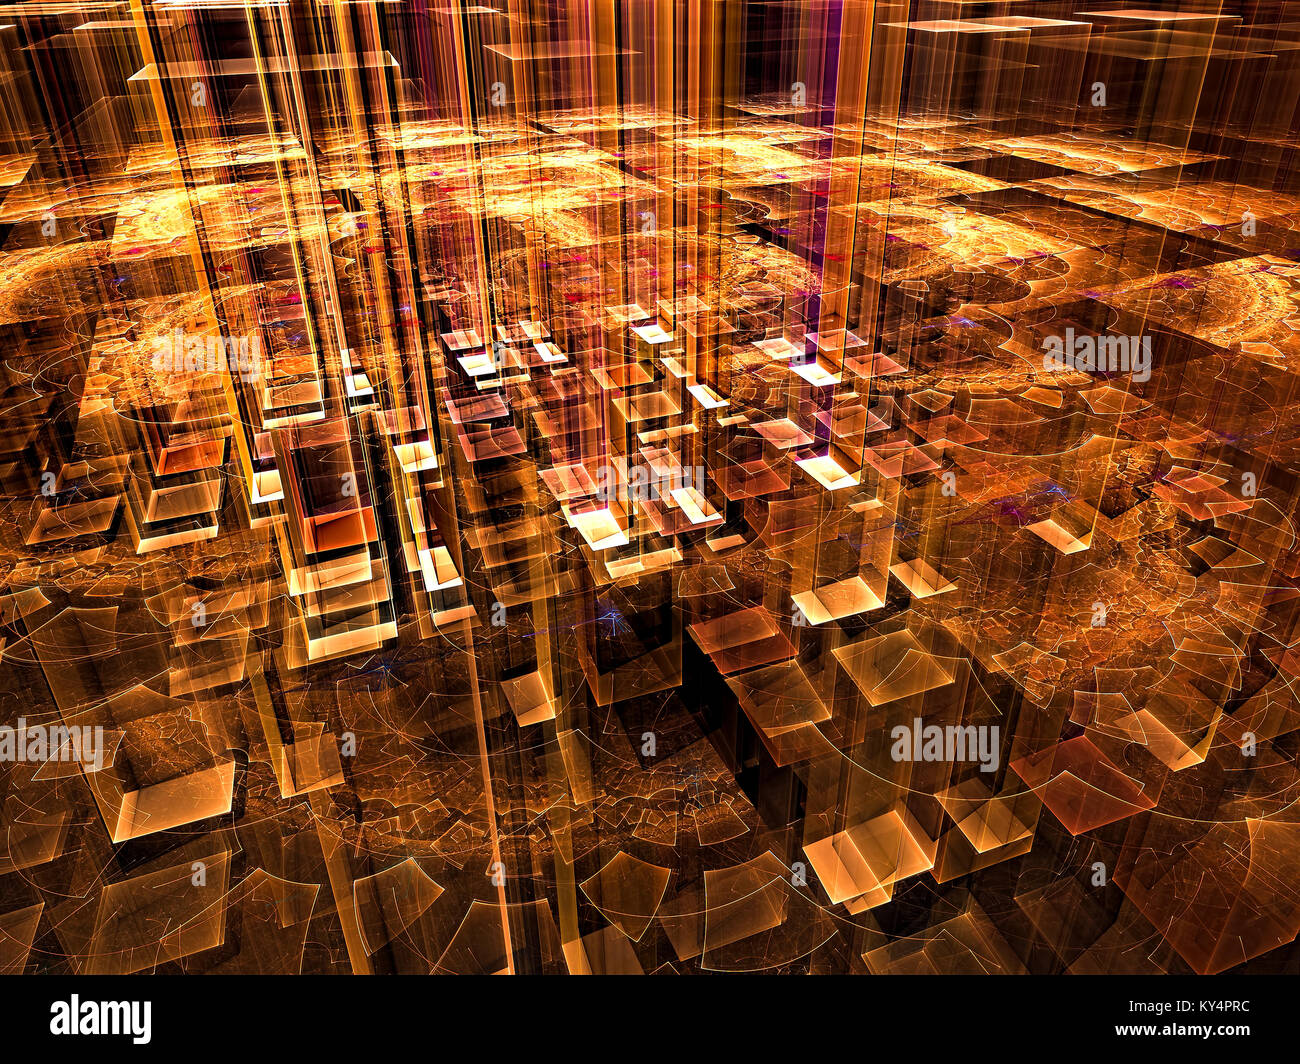 Lugar místico - abstracto imagen generada por computadora. Fondo fractal dorado con rayas verticales o pilares de luz. De ciencia ficción o esotérico Foto de stock